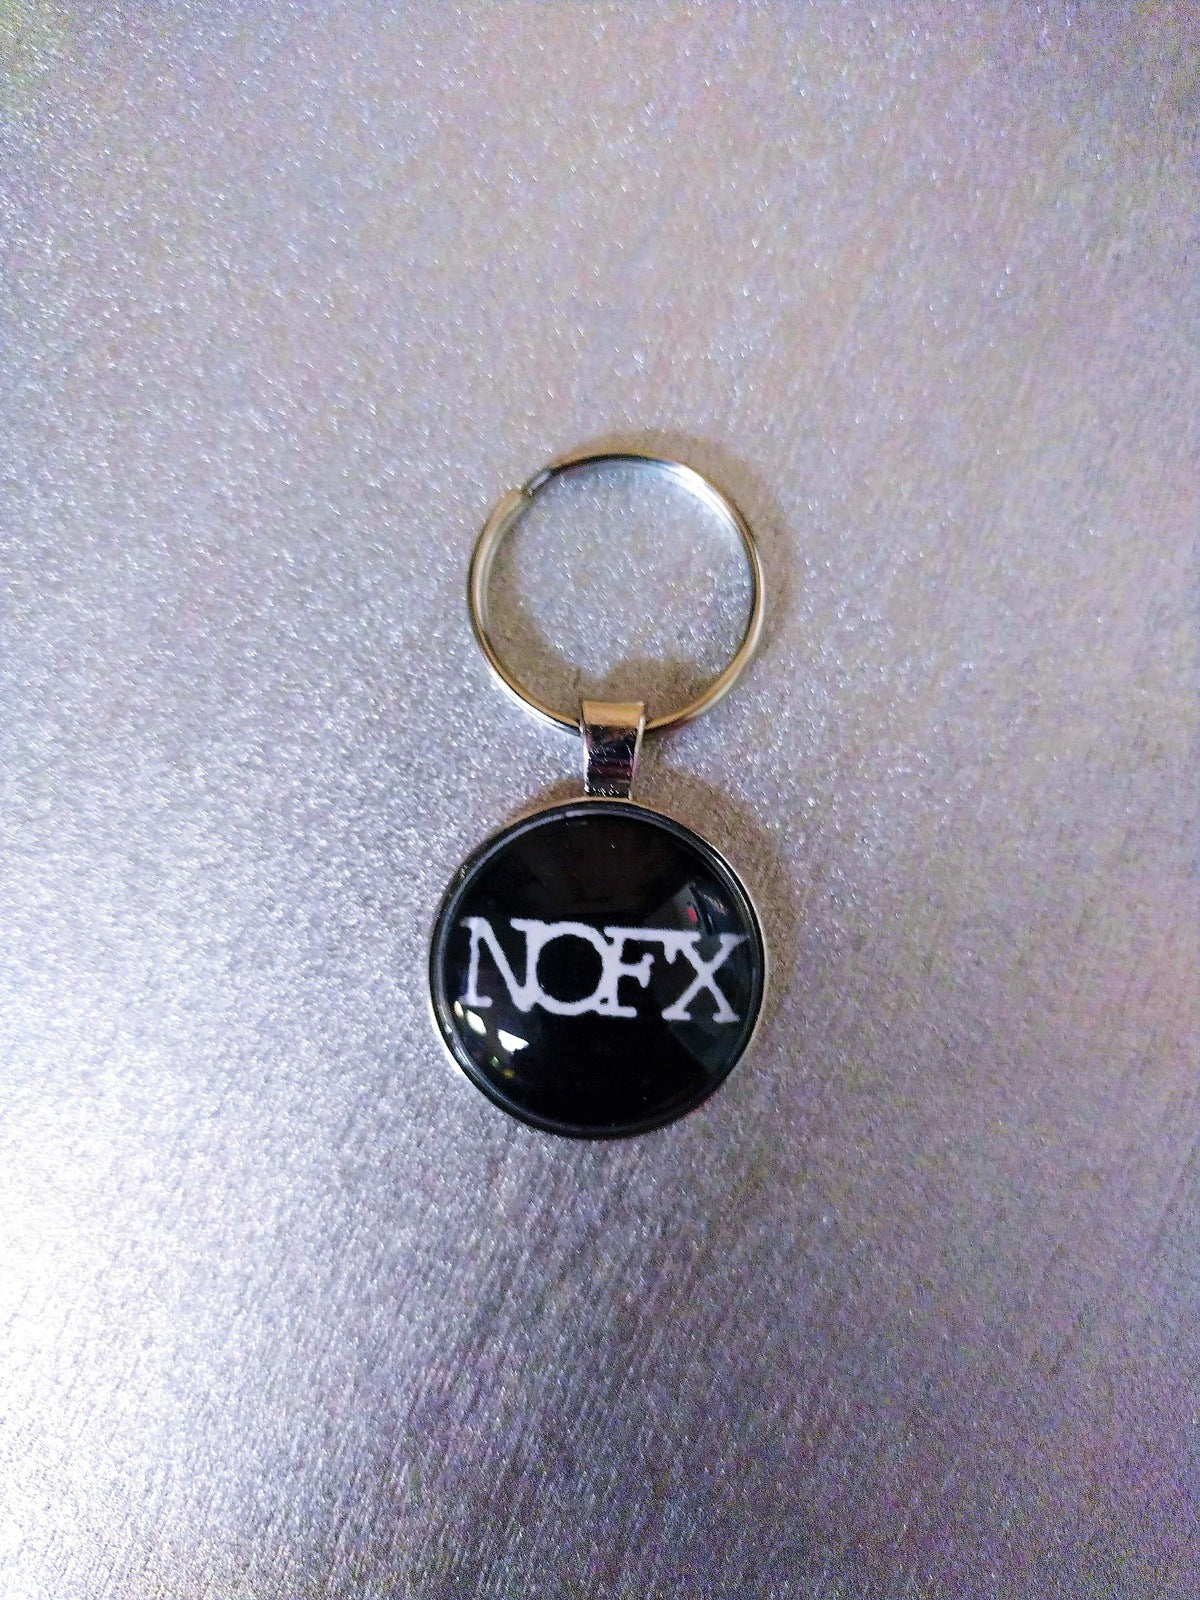 NOFX 1 Inch Keychain